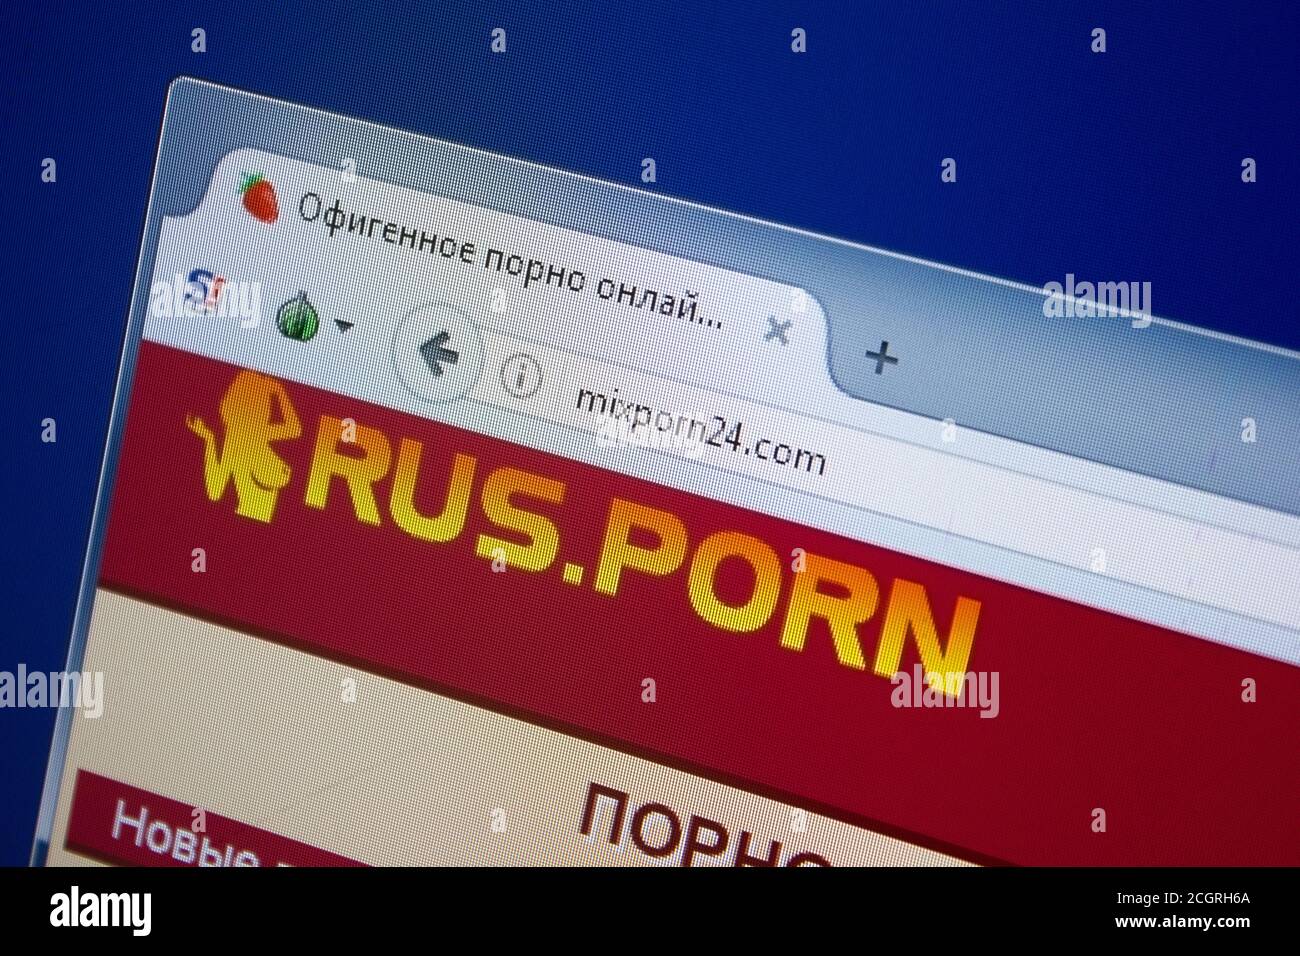 Порно фильмы смотреть онлайн бесплатно, с русским переводом., страница 4